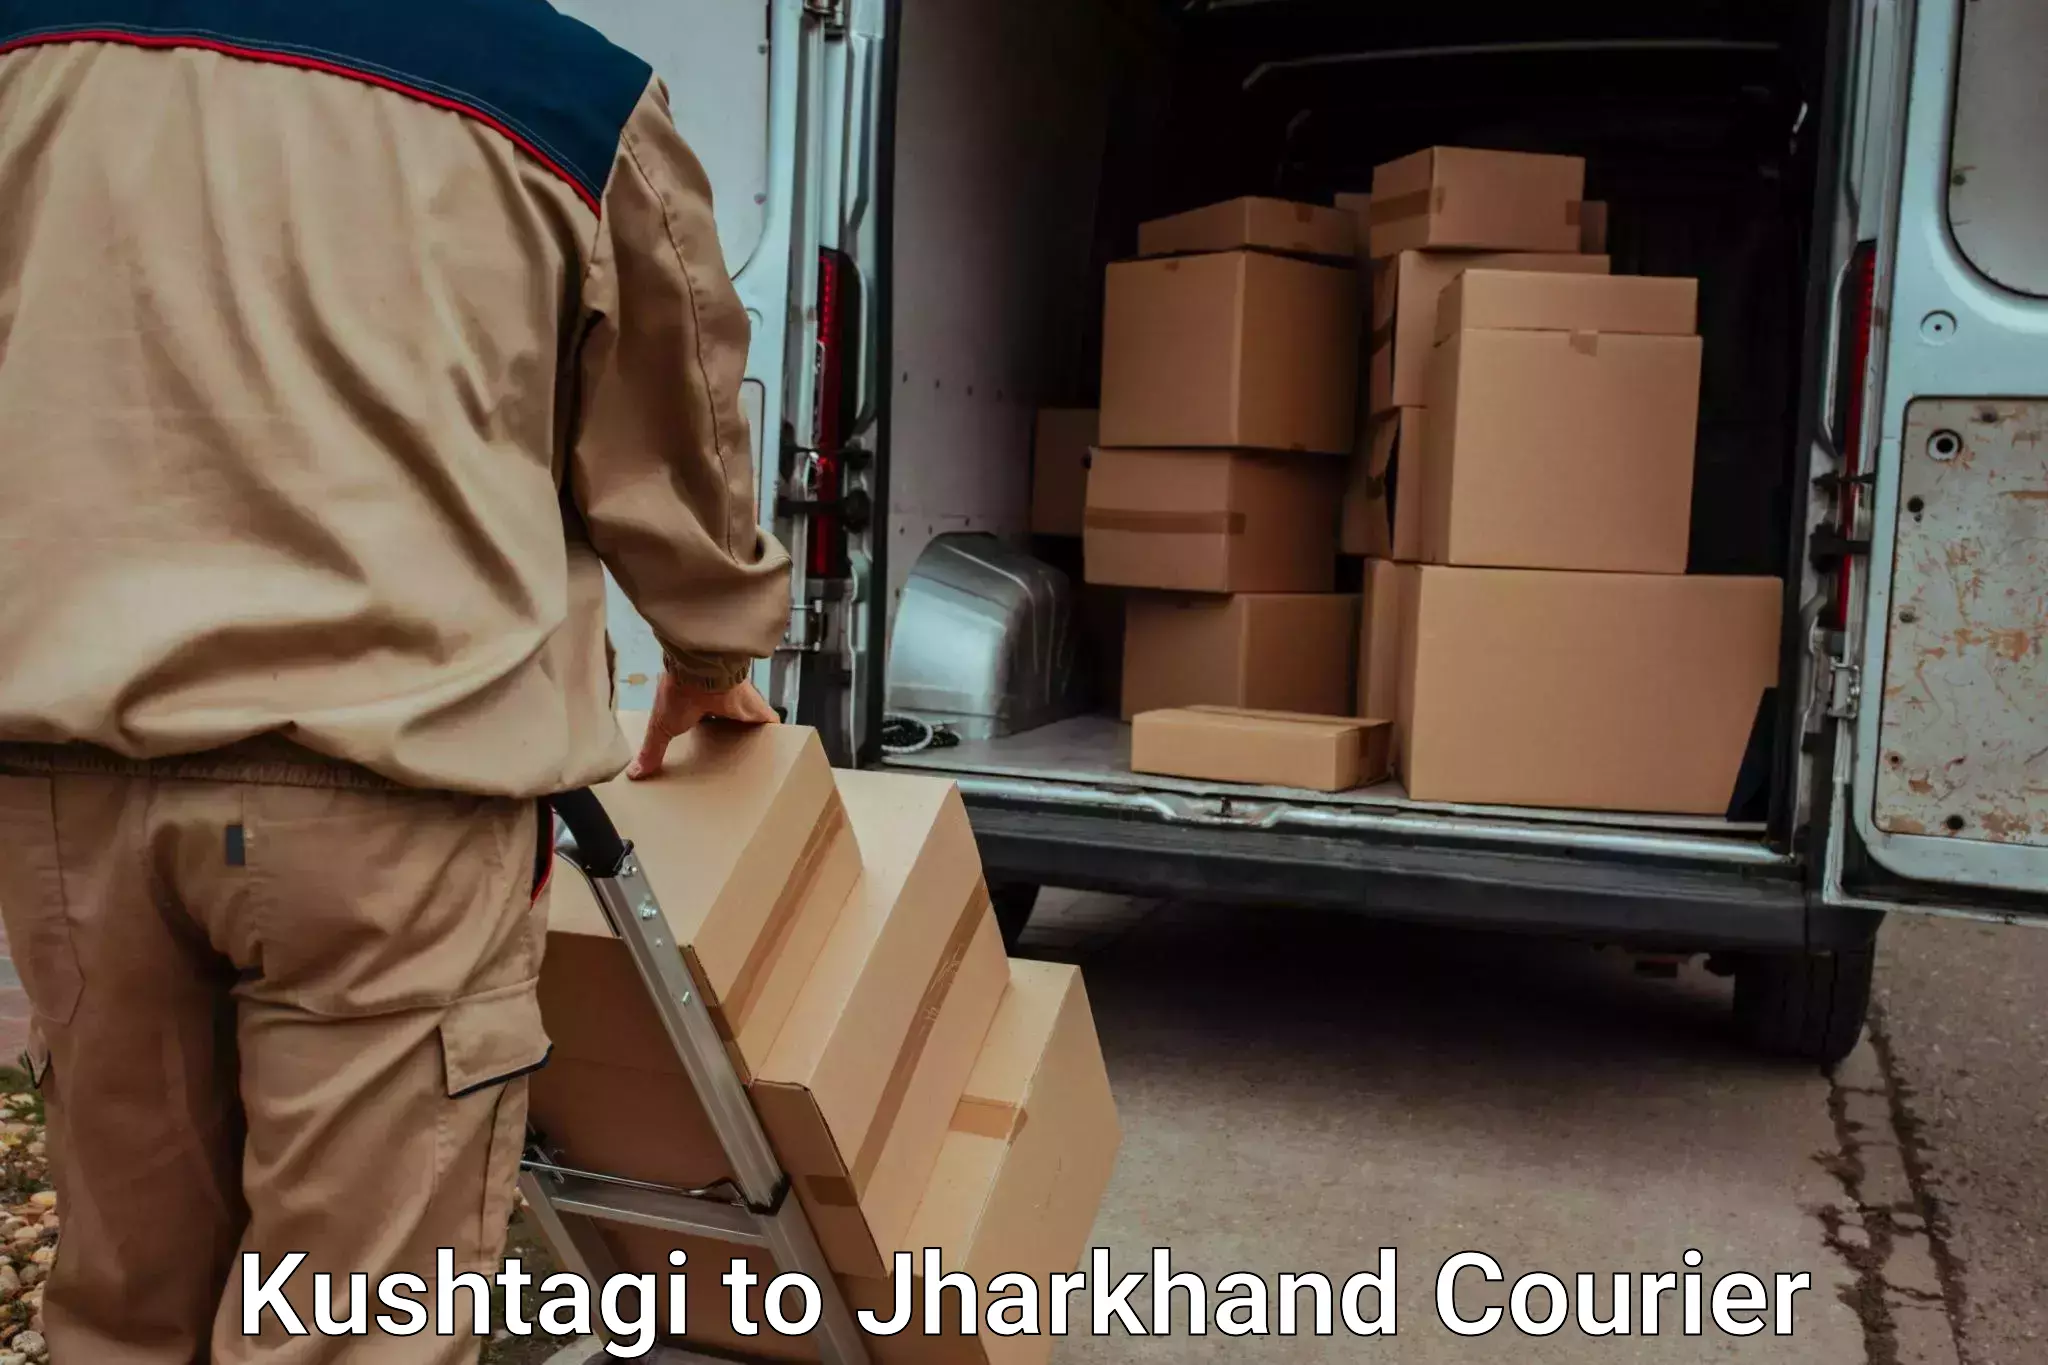 Luggage shipment specialists Kushtagi to Itkhori